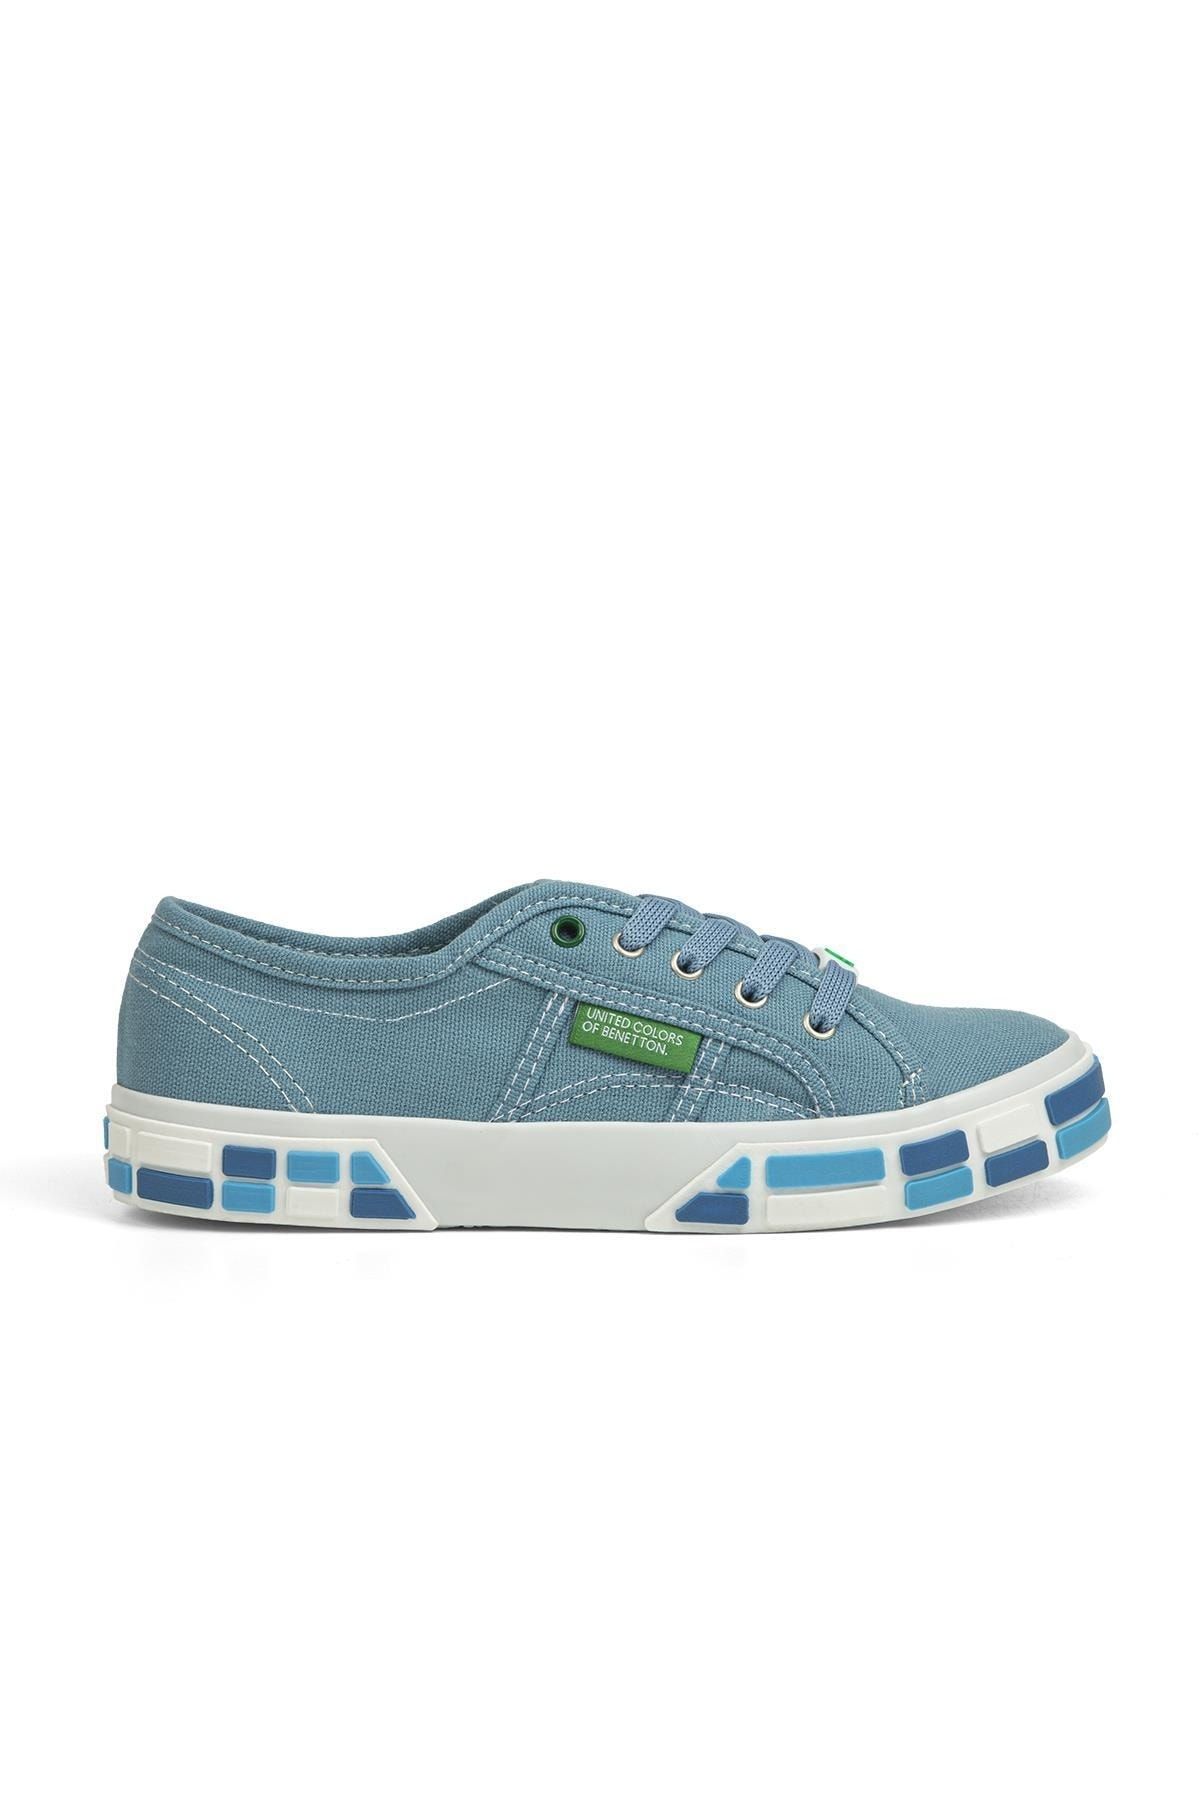 Benetton ® | Bn-30691-3114 Mavi - Kadın Spor Ayakkabı